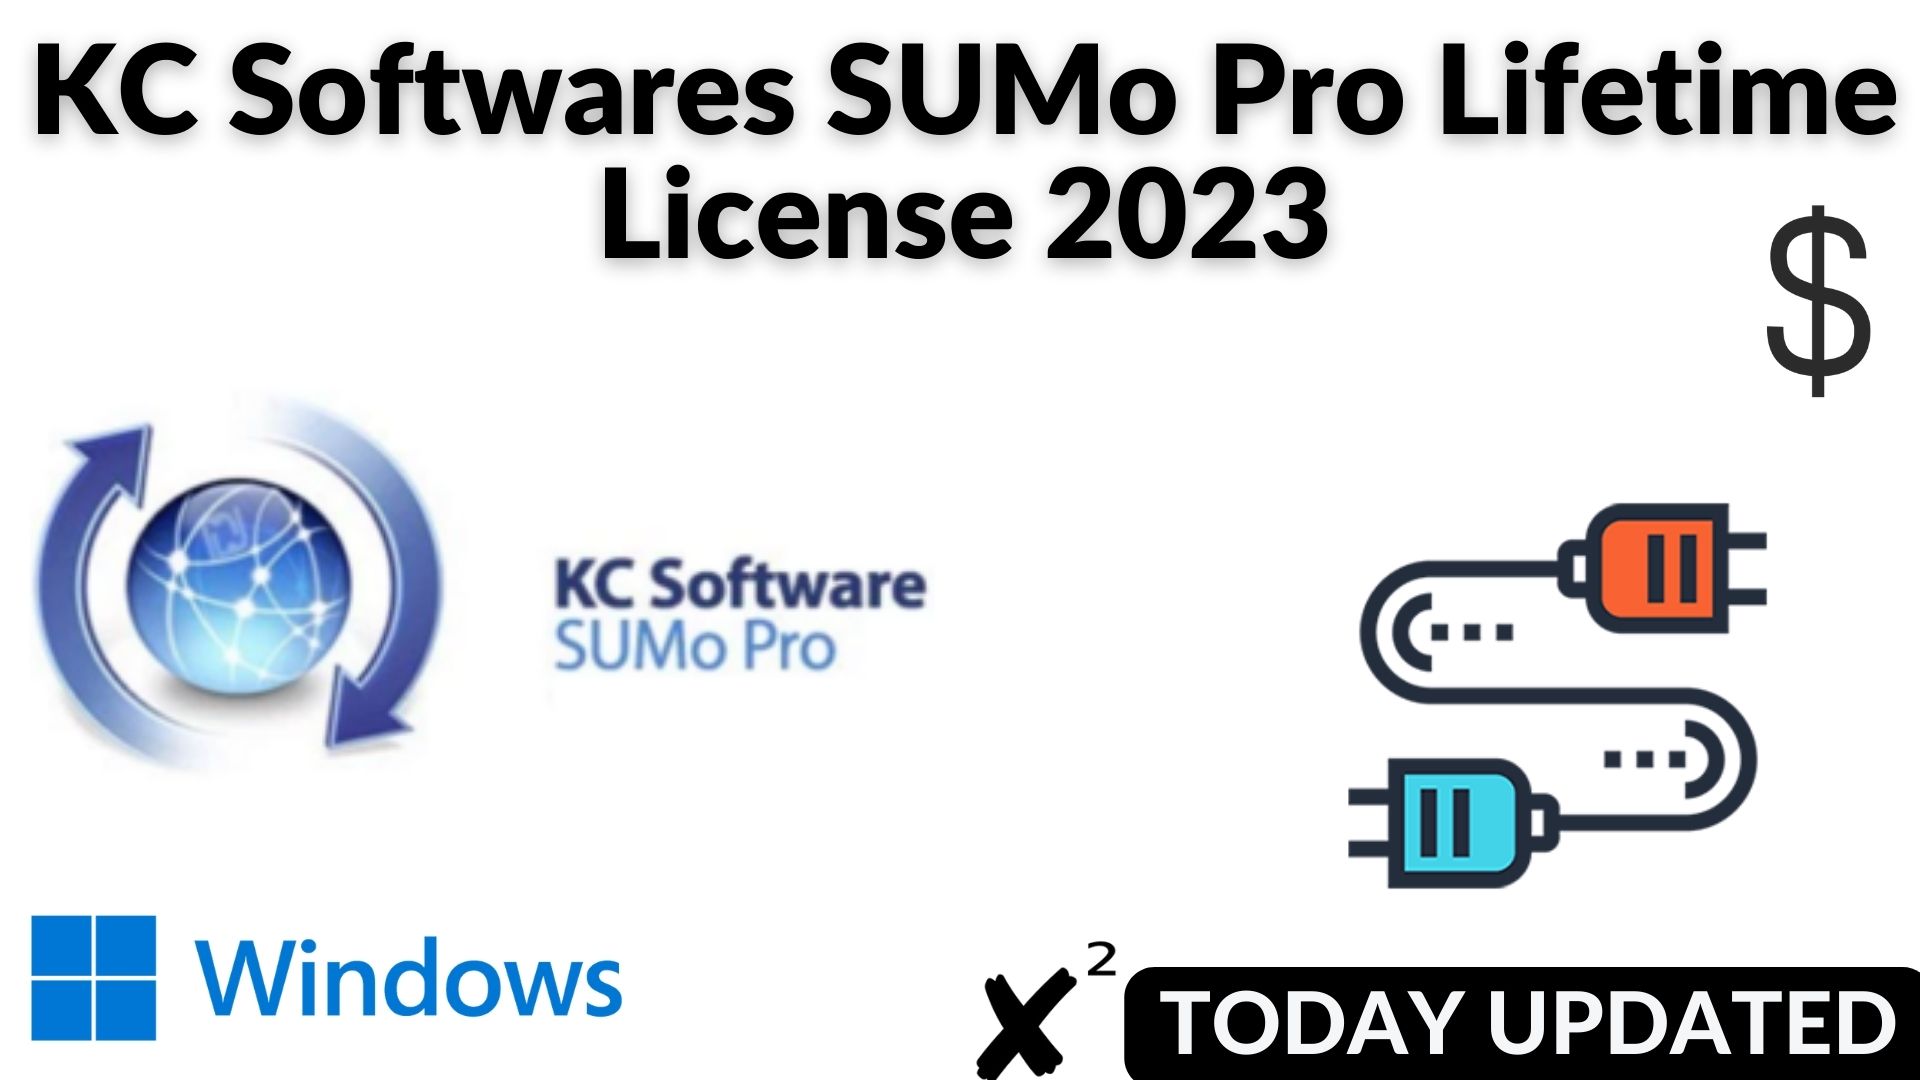 Kc softwares sumo pro lifetime license 2023